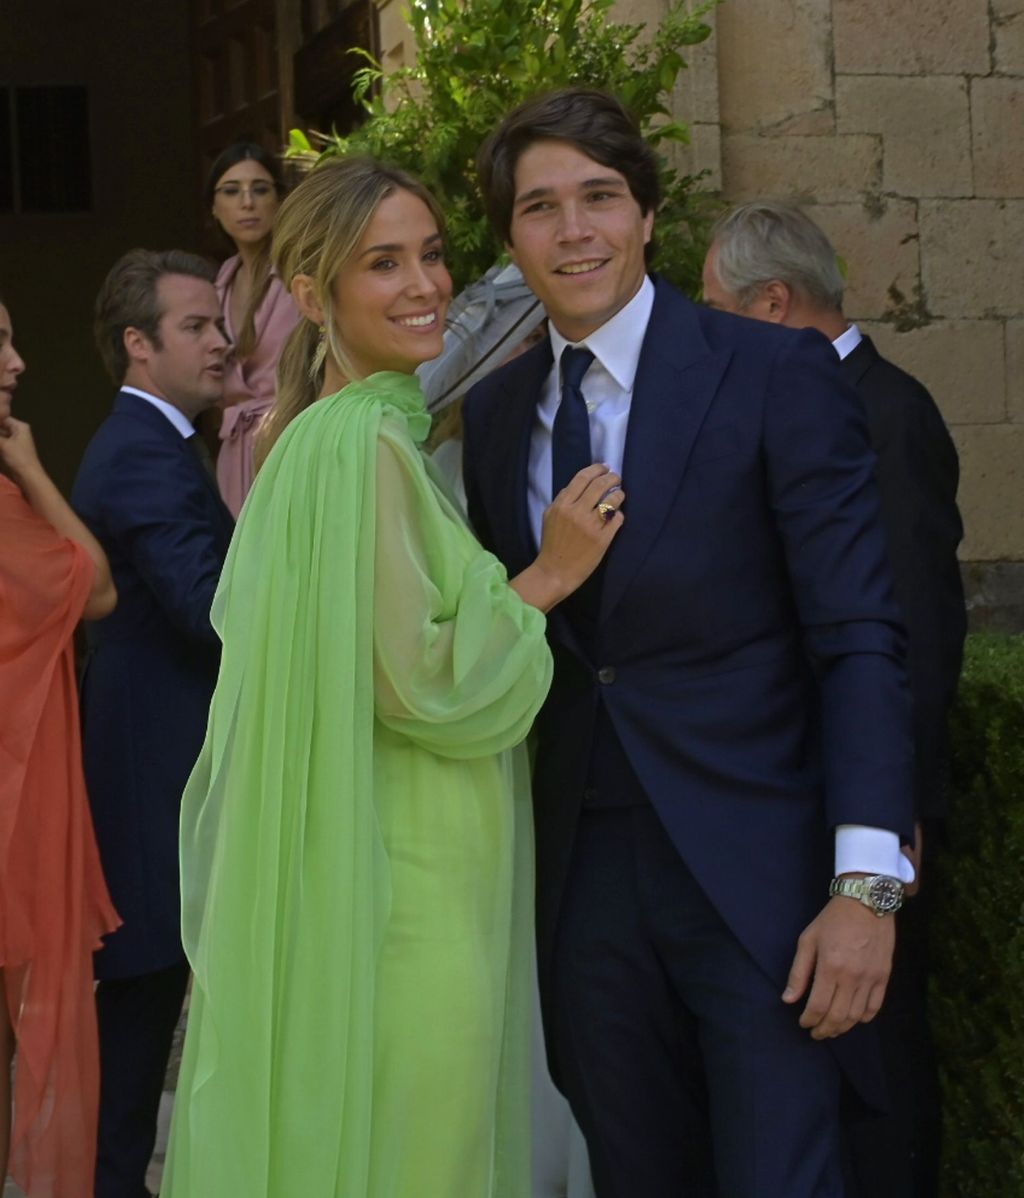 Maria Pomobo y Pablo Castellano during the wedding of Lucia Pombo and Alvaro Lopez Huertas in Villafranca de Condado, Segovia on Saturday June 25, 2022